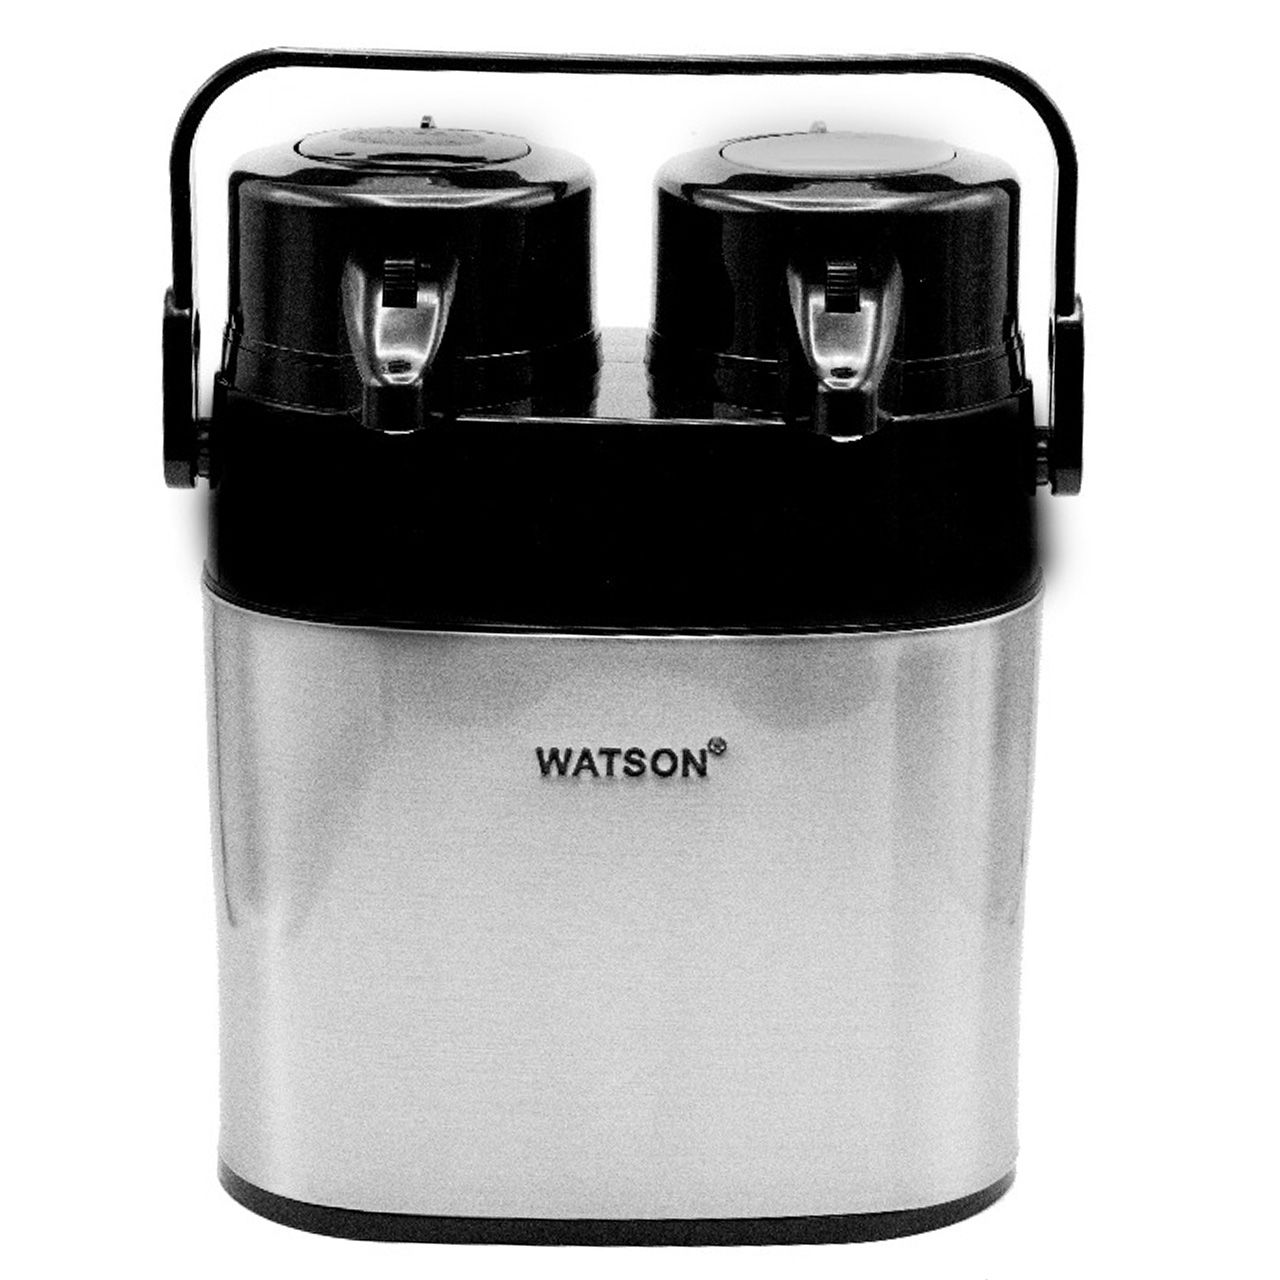 فلاسک دوقلو واتسون مدل ws-2613-st کد 535 ظرفیت 1.3 لیتر